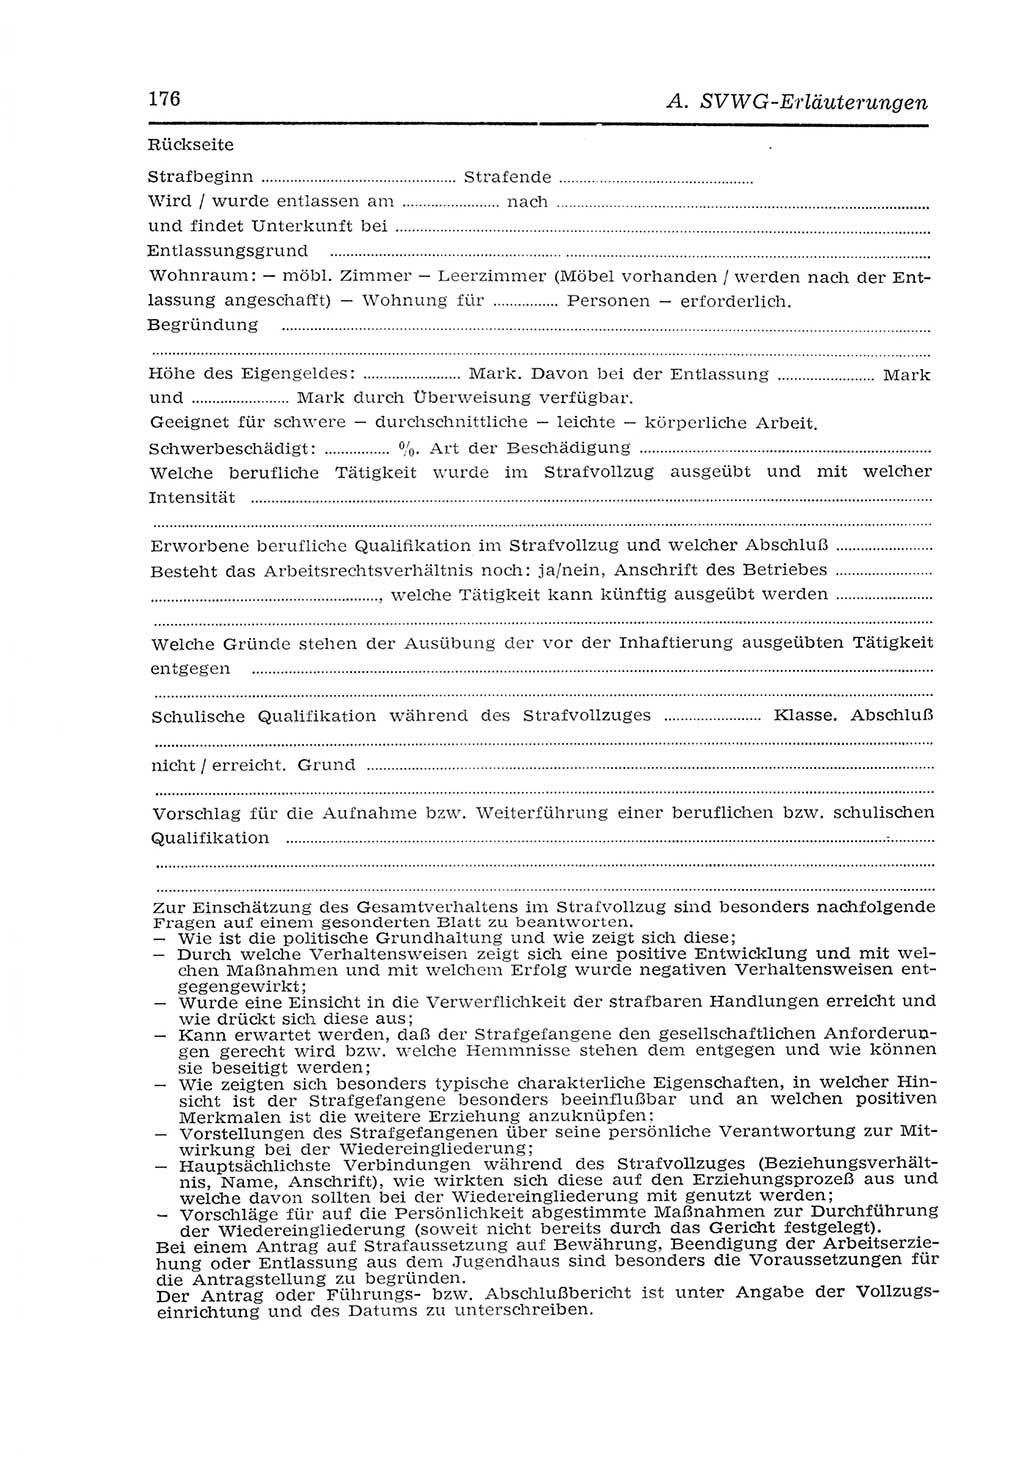 Strafvollzugs- und Wiedereingliederungsgesetz (SVWG) der Deutschen Demokratischen Republik (DDR) 1968, Seite 176 (SVWG DDR 1968, S. 176)